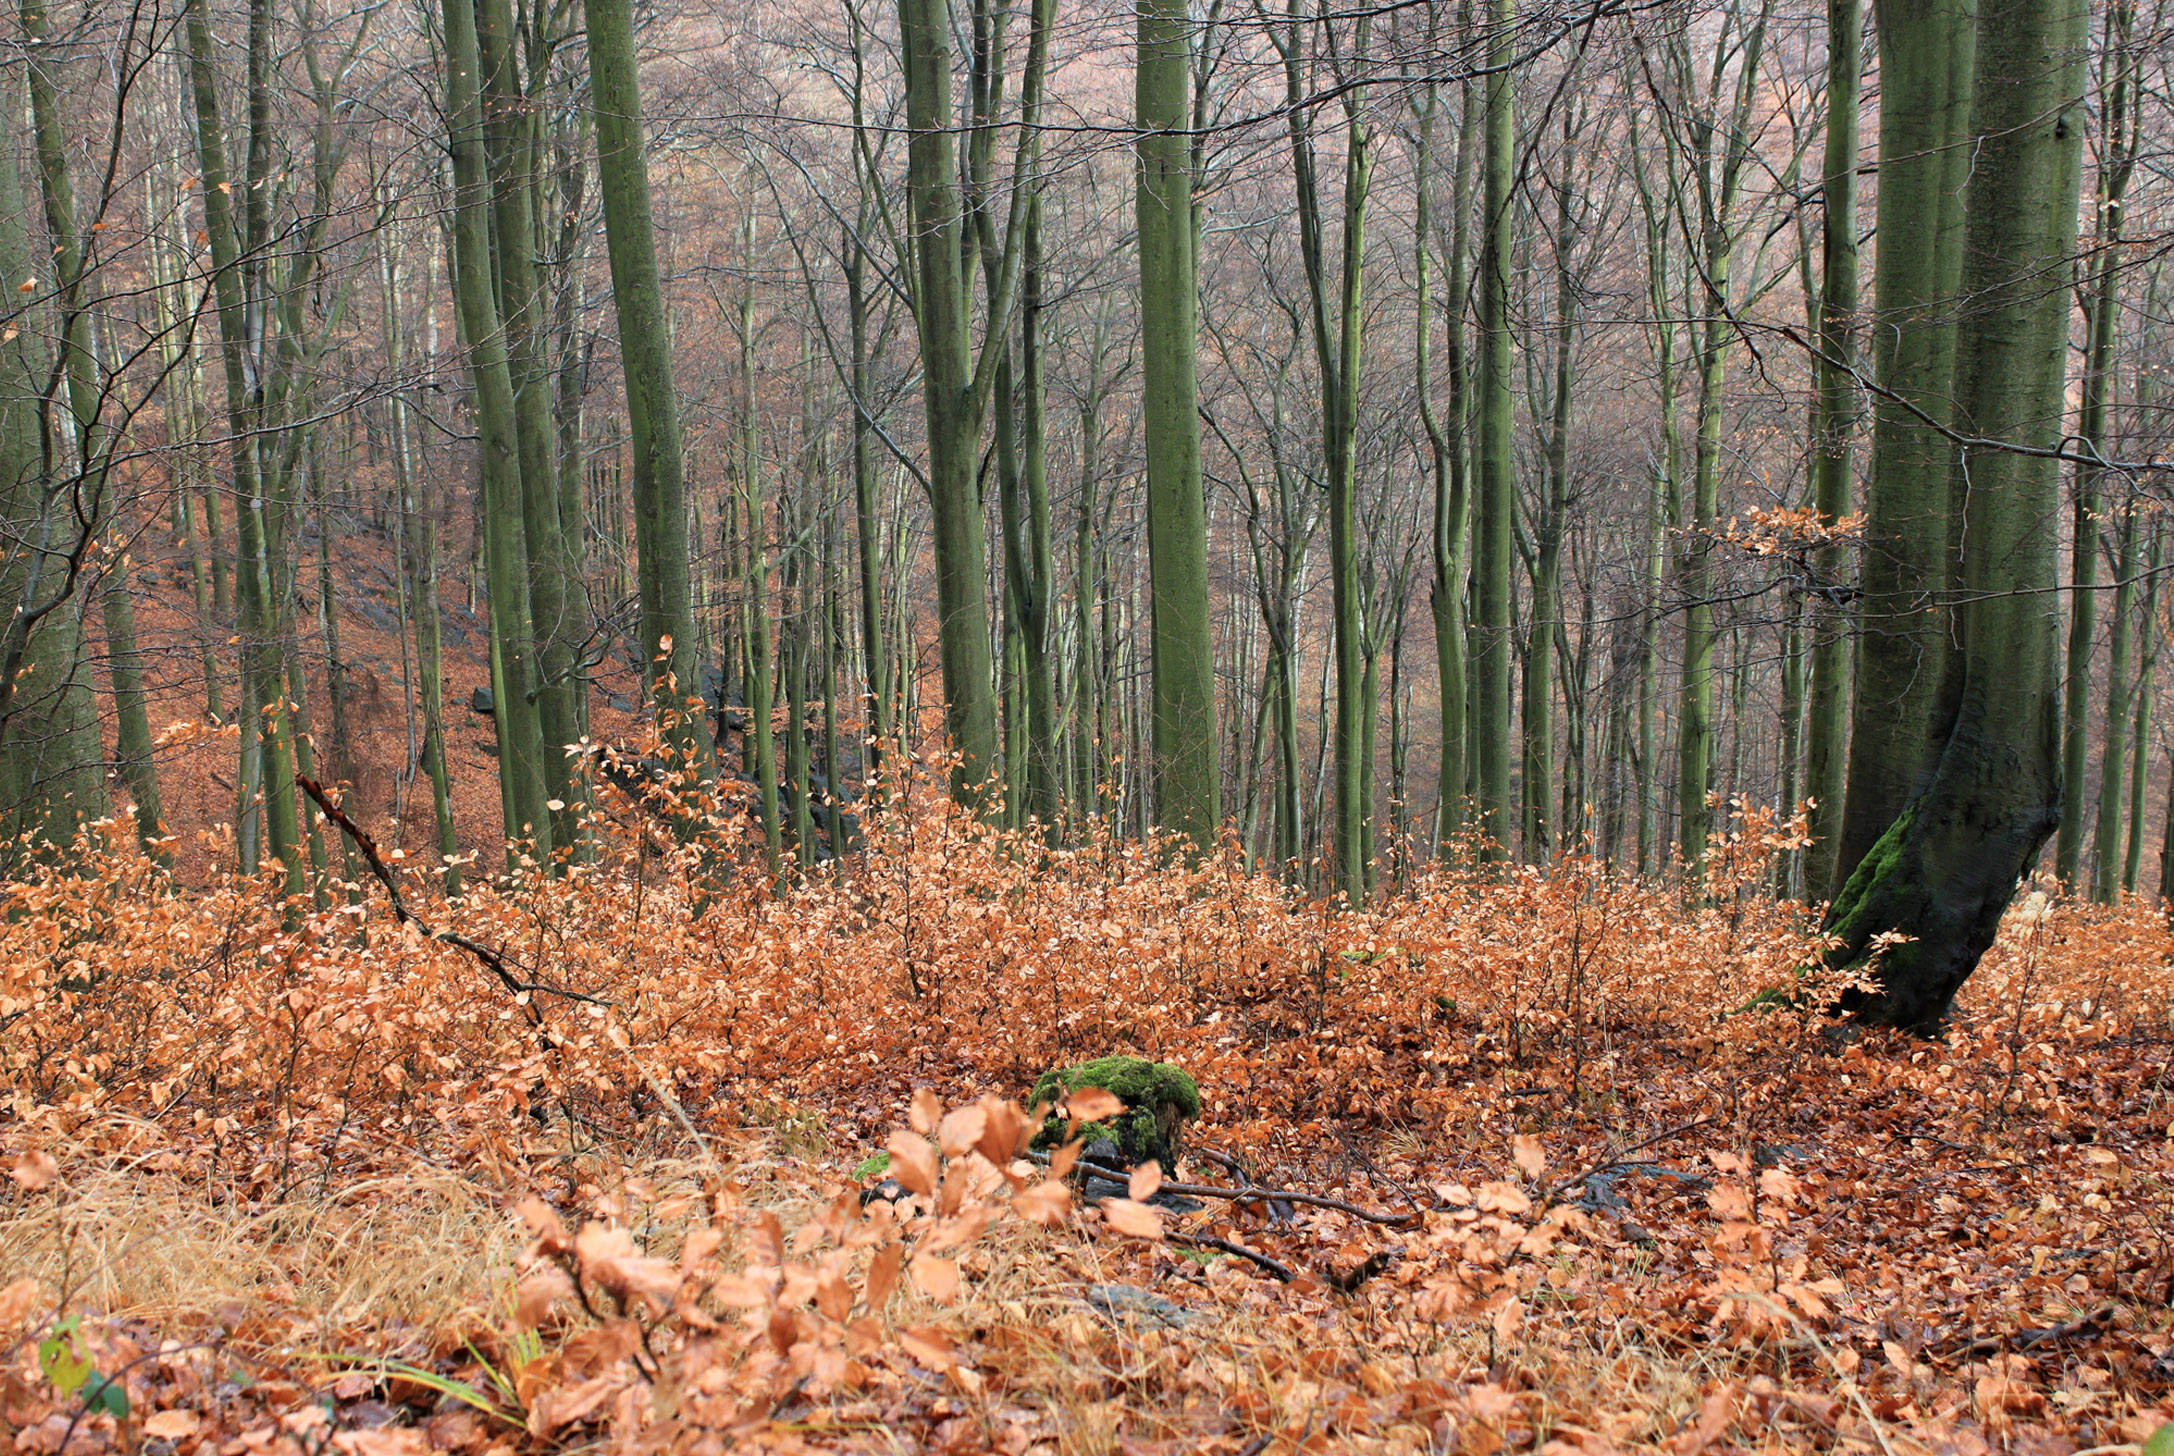 Bukový les překvapuje na mnoha místech vitalitou přirozené obnovy v místech, která jsou obhospodařována podrostně, anebo dlouhodobě vůbec neobhospodařována. Foto: J. Křivánek, AOPK ČR